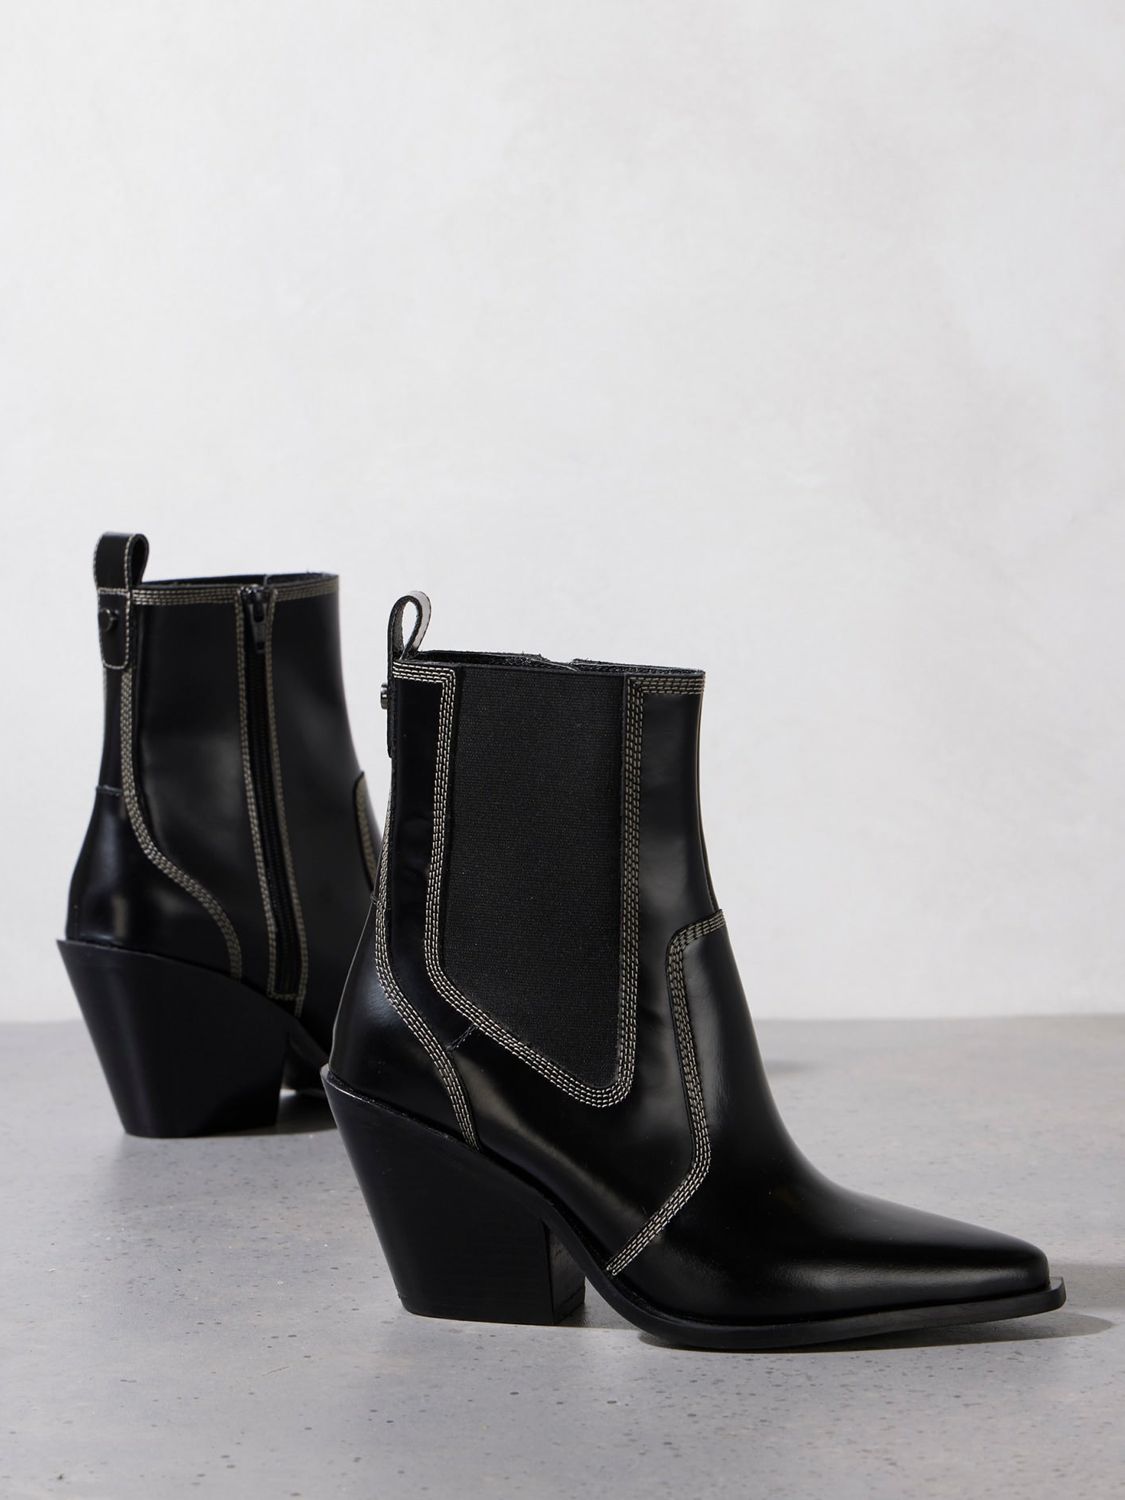 Mint Velvet Patent Leather Cowboy Boots, Black at John Lewis & Partners